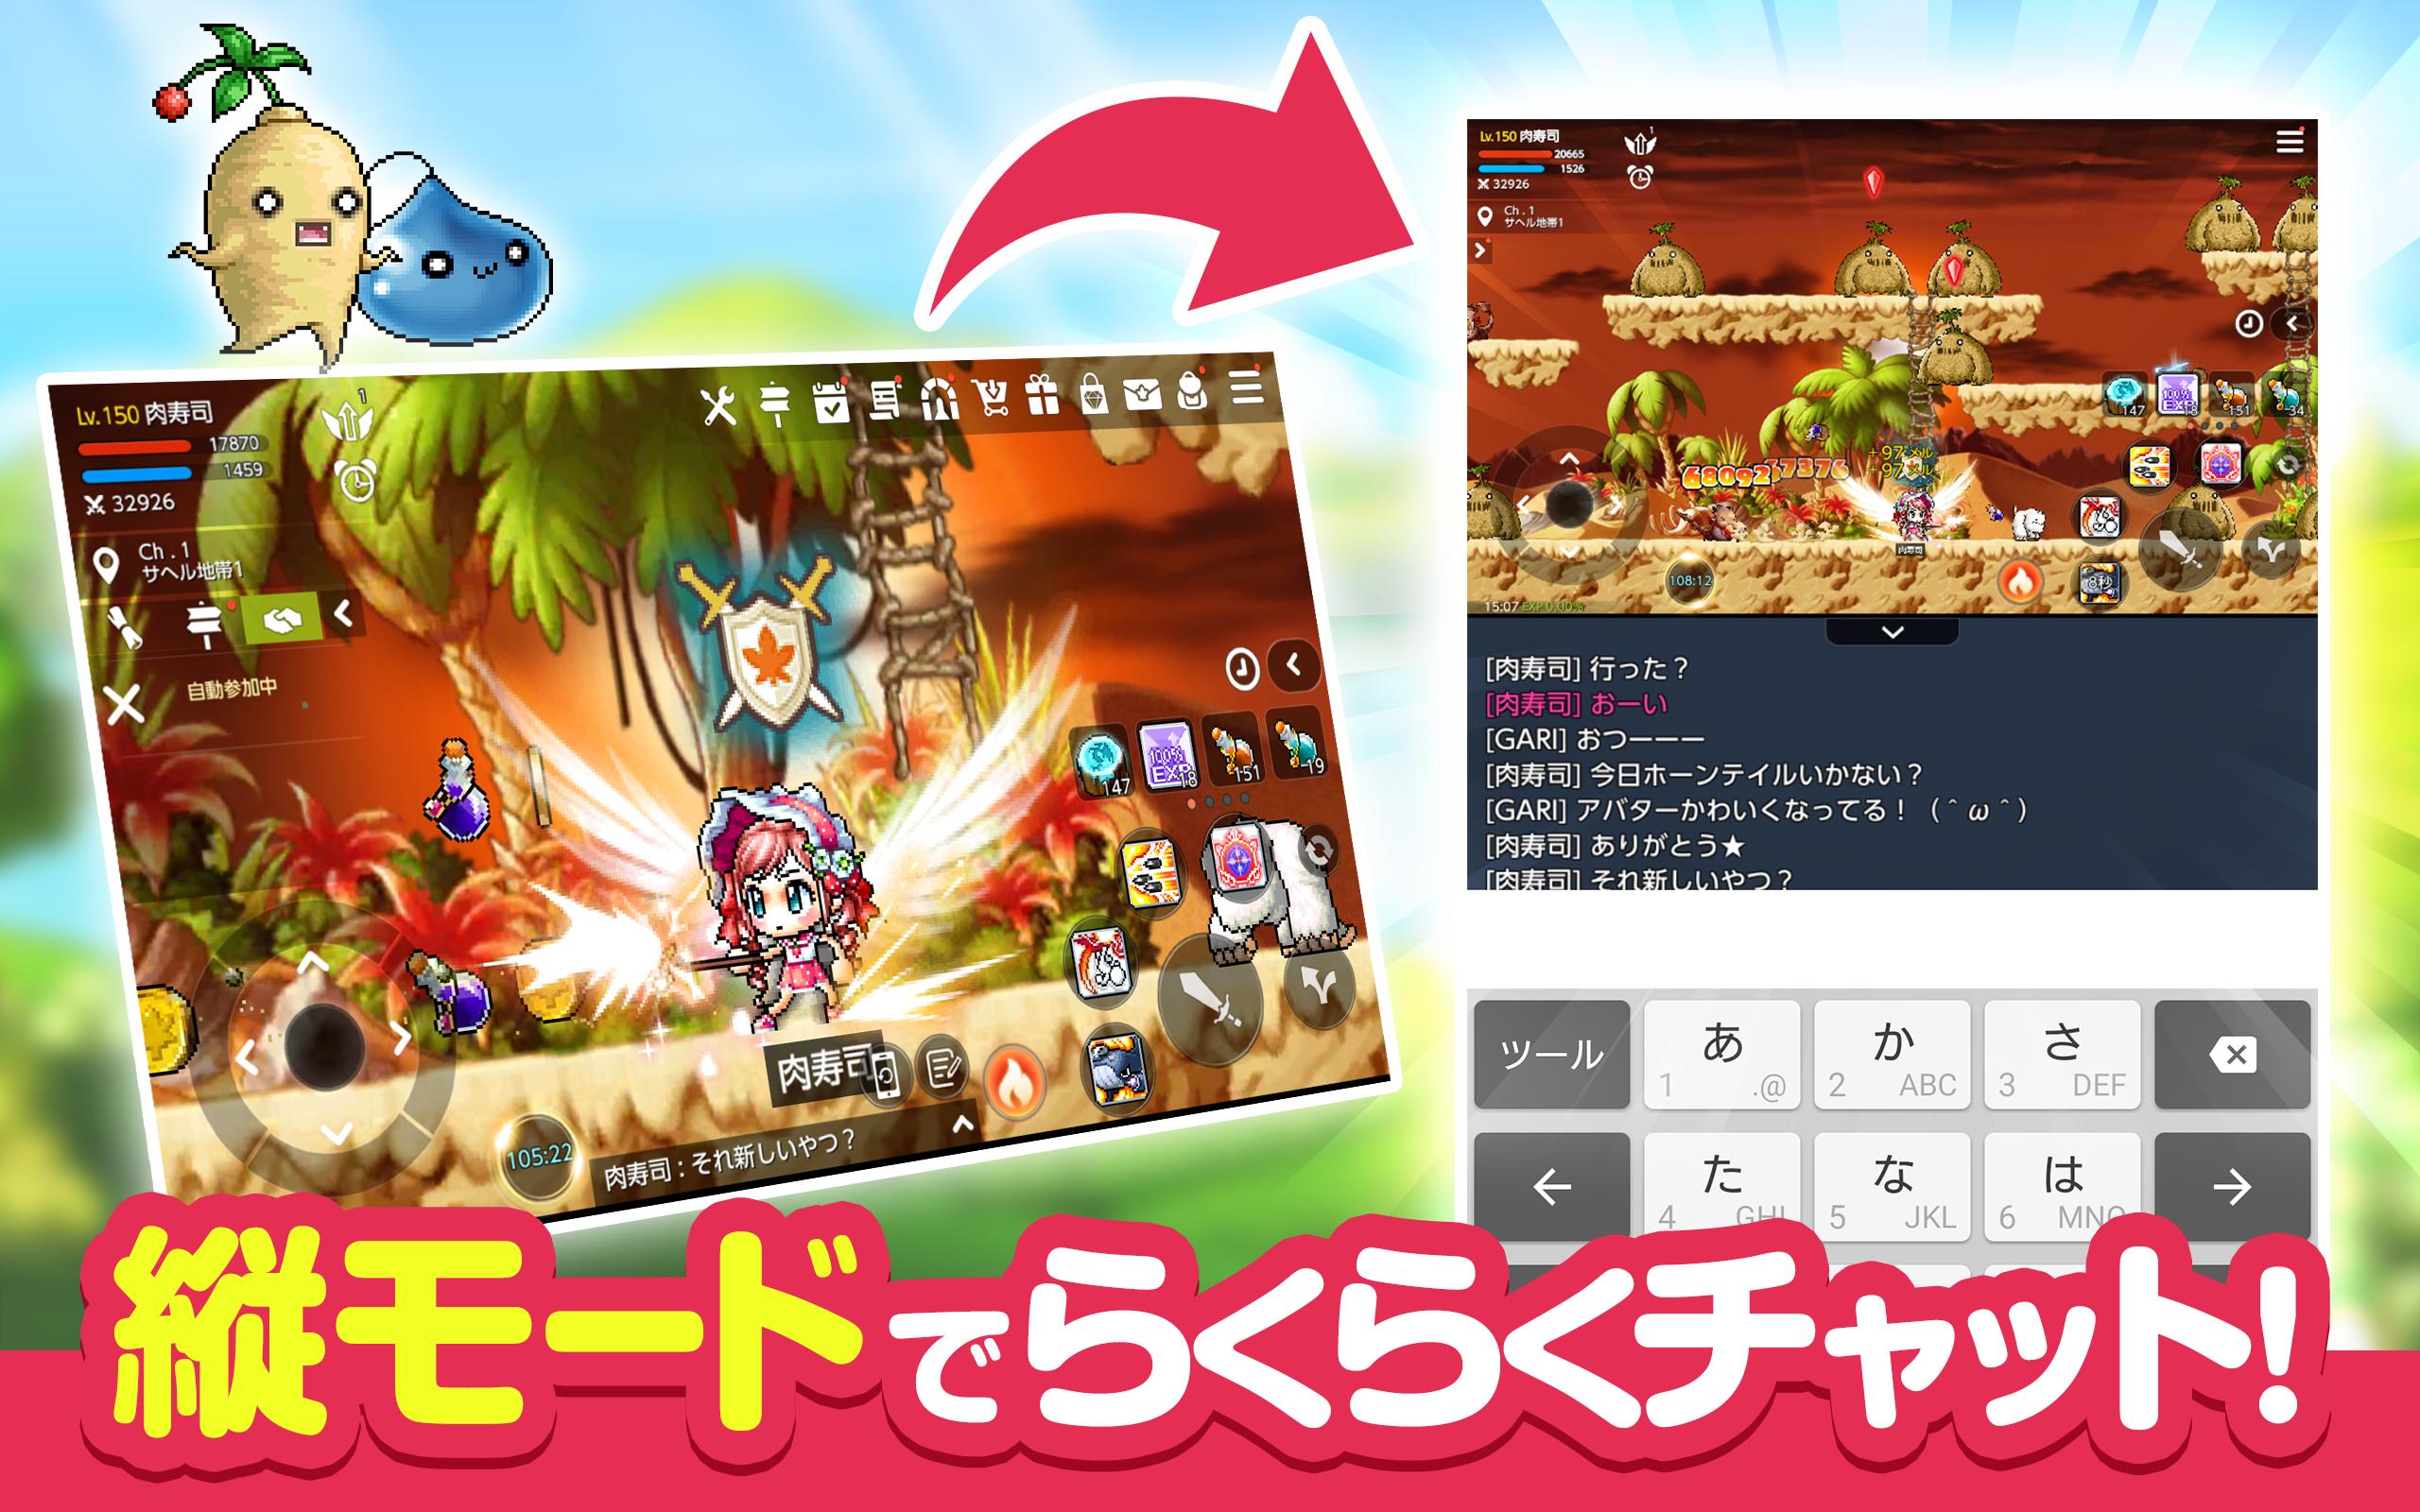 メイプルストーリーＭ 協力マルチプレイが魅力のオンラインゲーム/MMORPG 1.640.2533 Screenshot 15